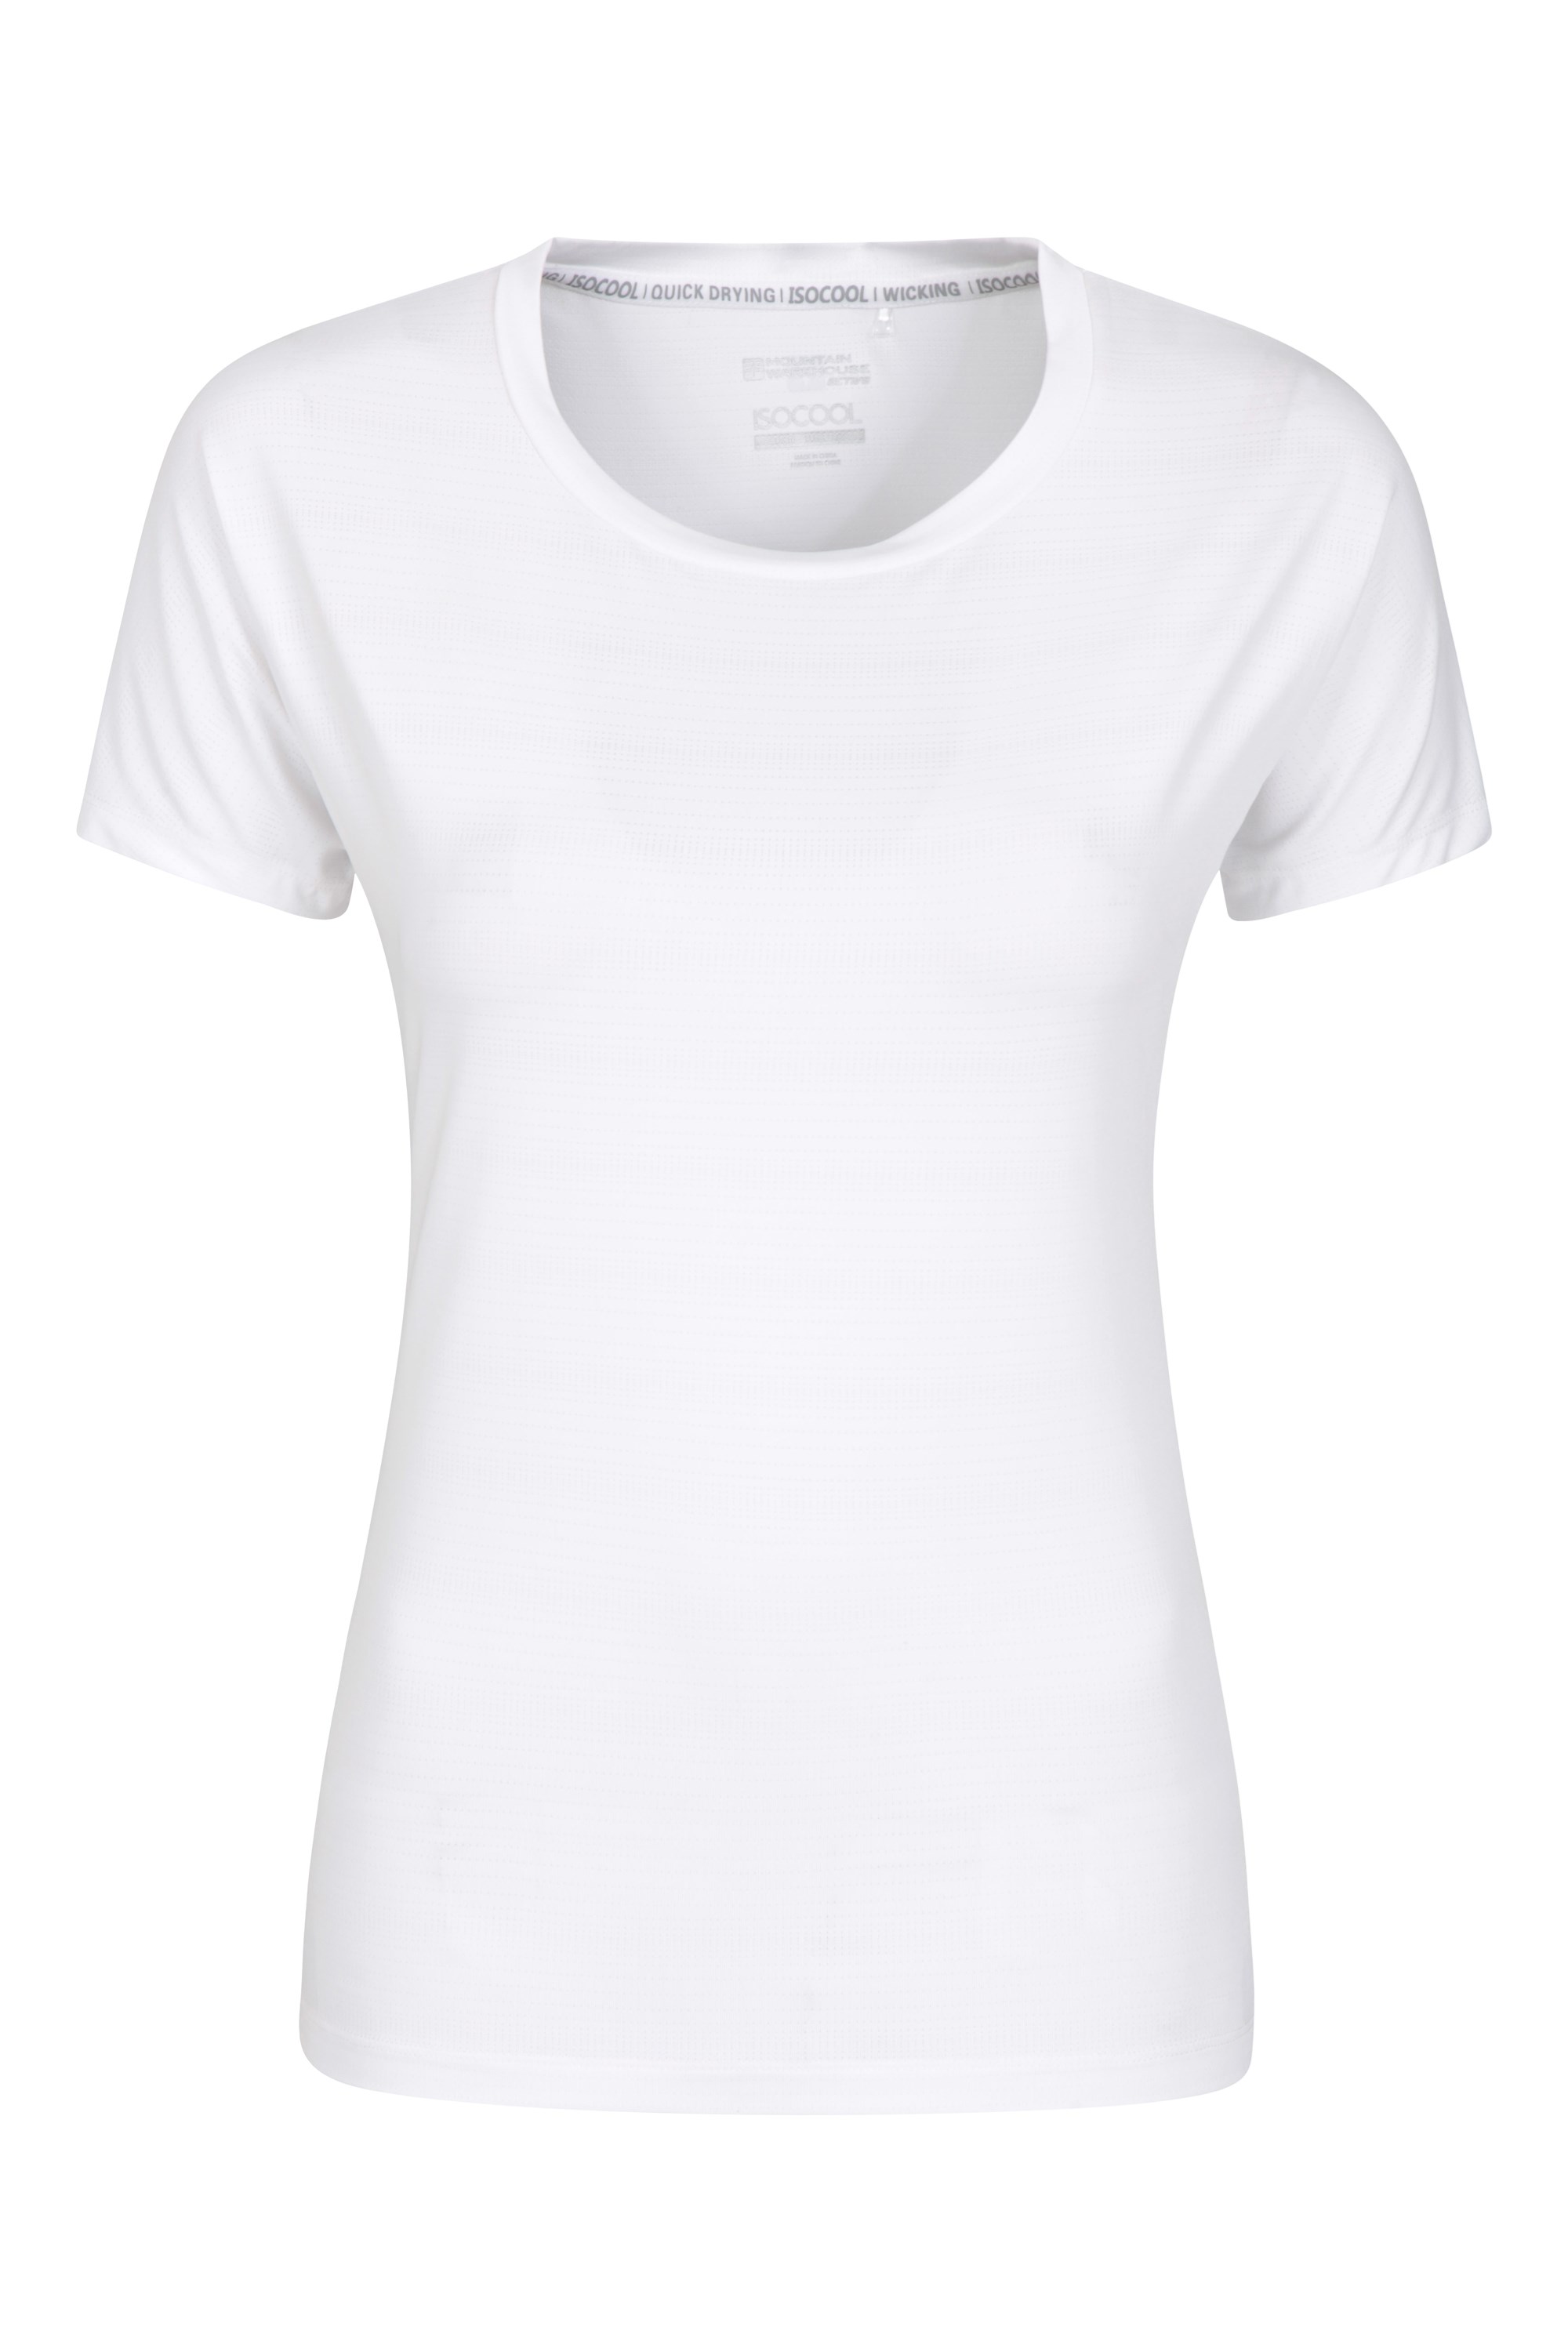 Aya — damska koszulka z krótkim rękawem - White